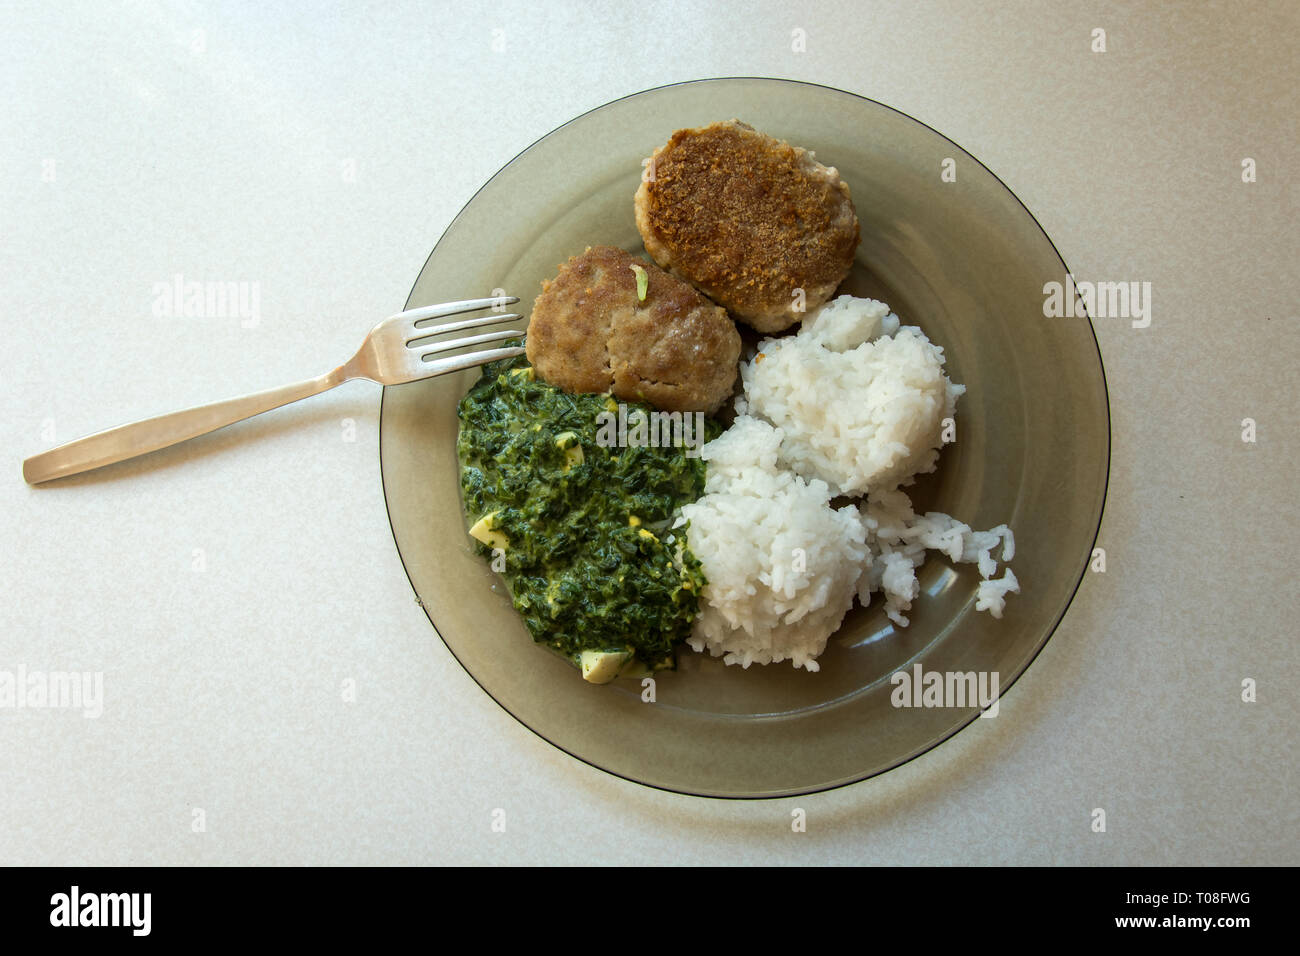 Polnische traditionelles Gericht auf einer Platte, Hackfleisch Schnitzel, Reis und Spinat - Ansicht von oben Stockfoto